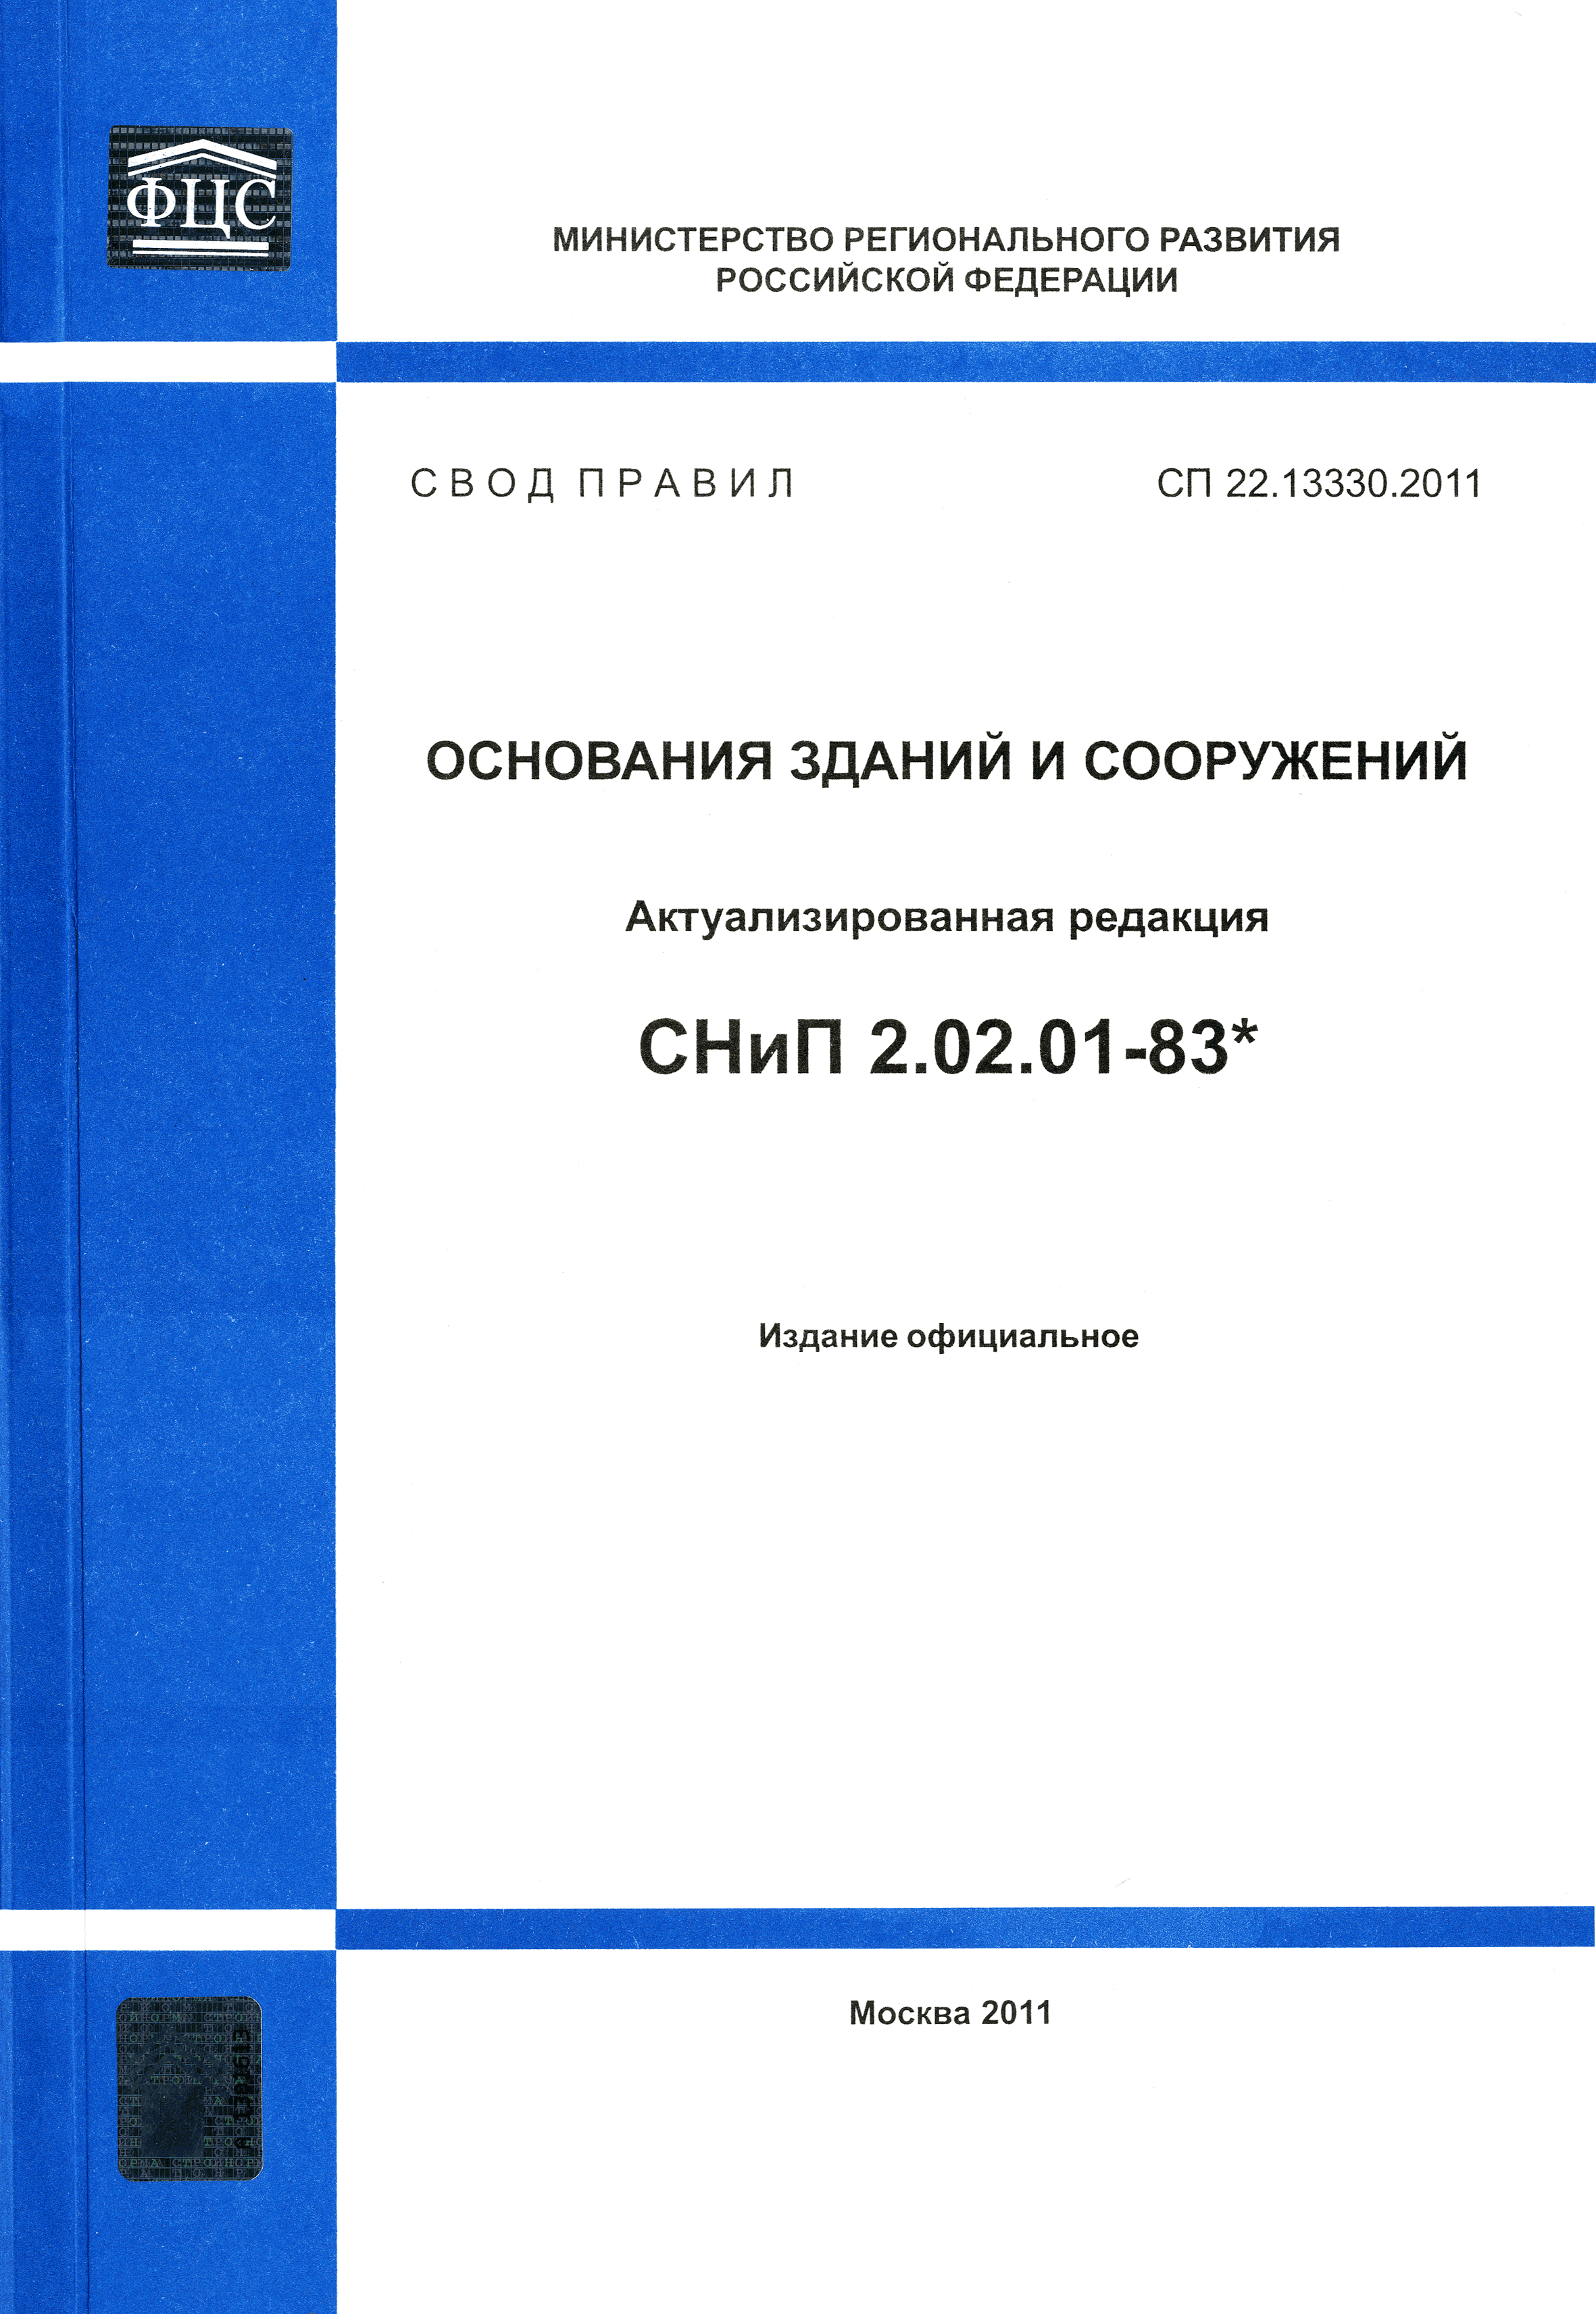 СП 22.13330.2011